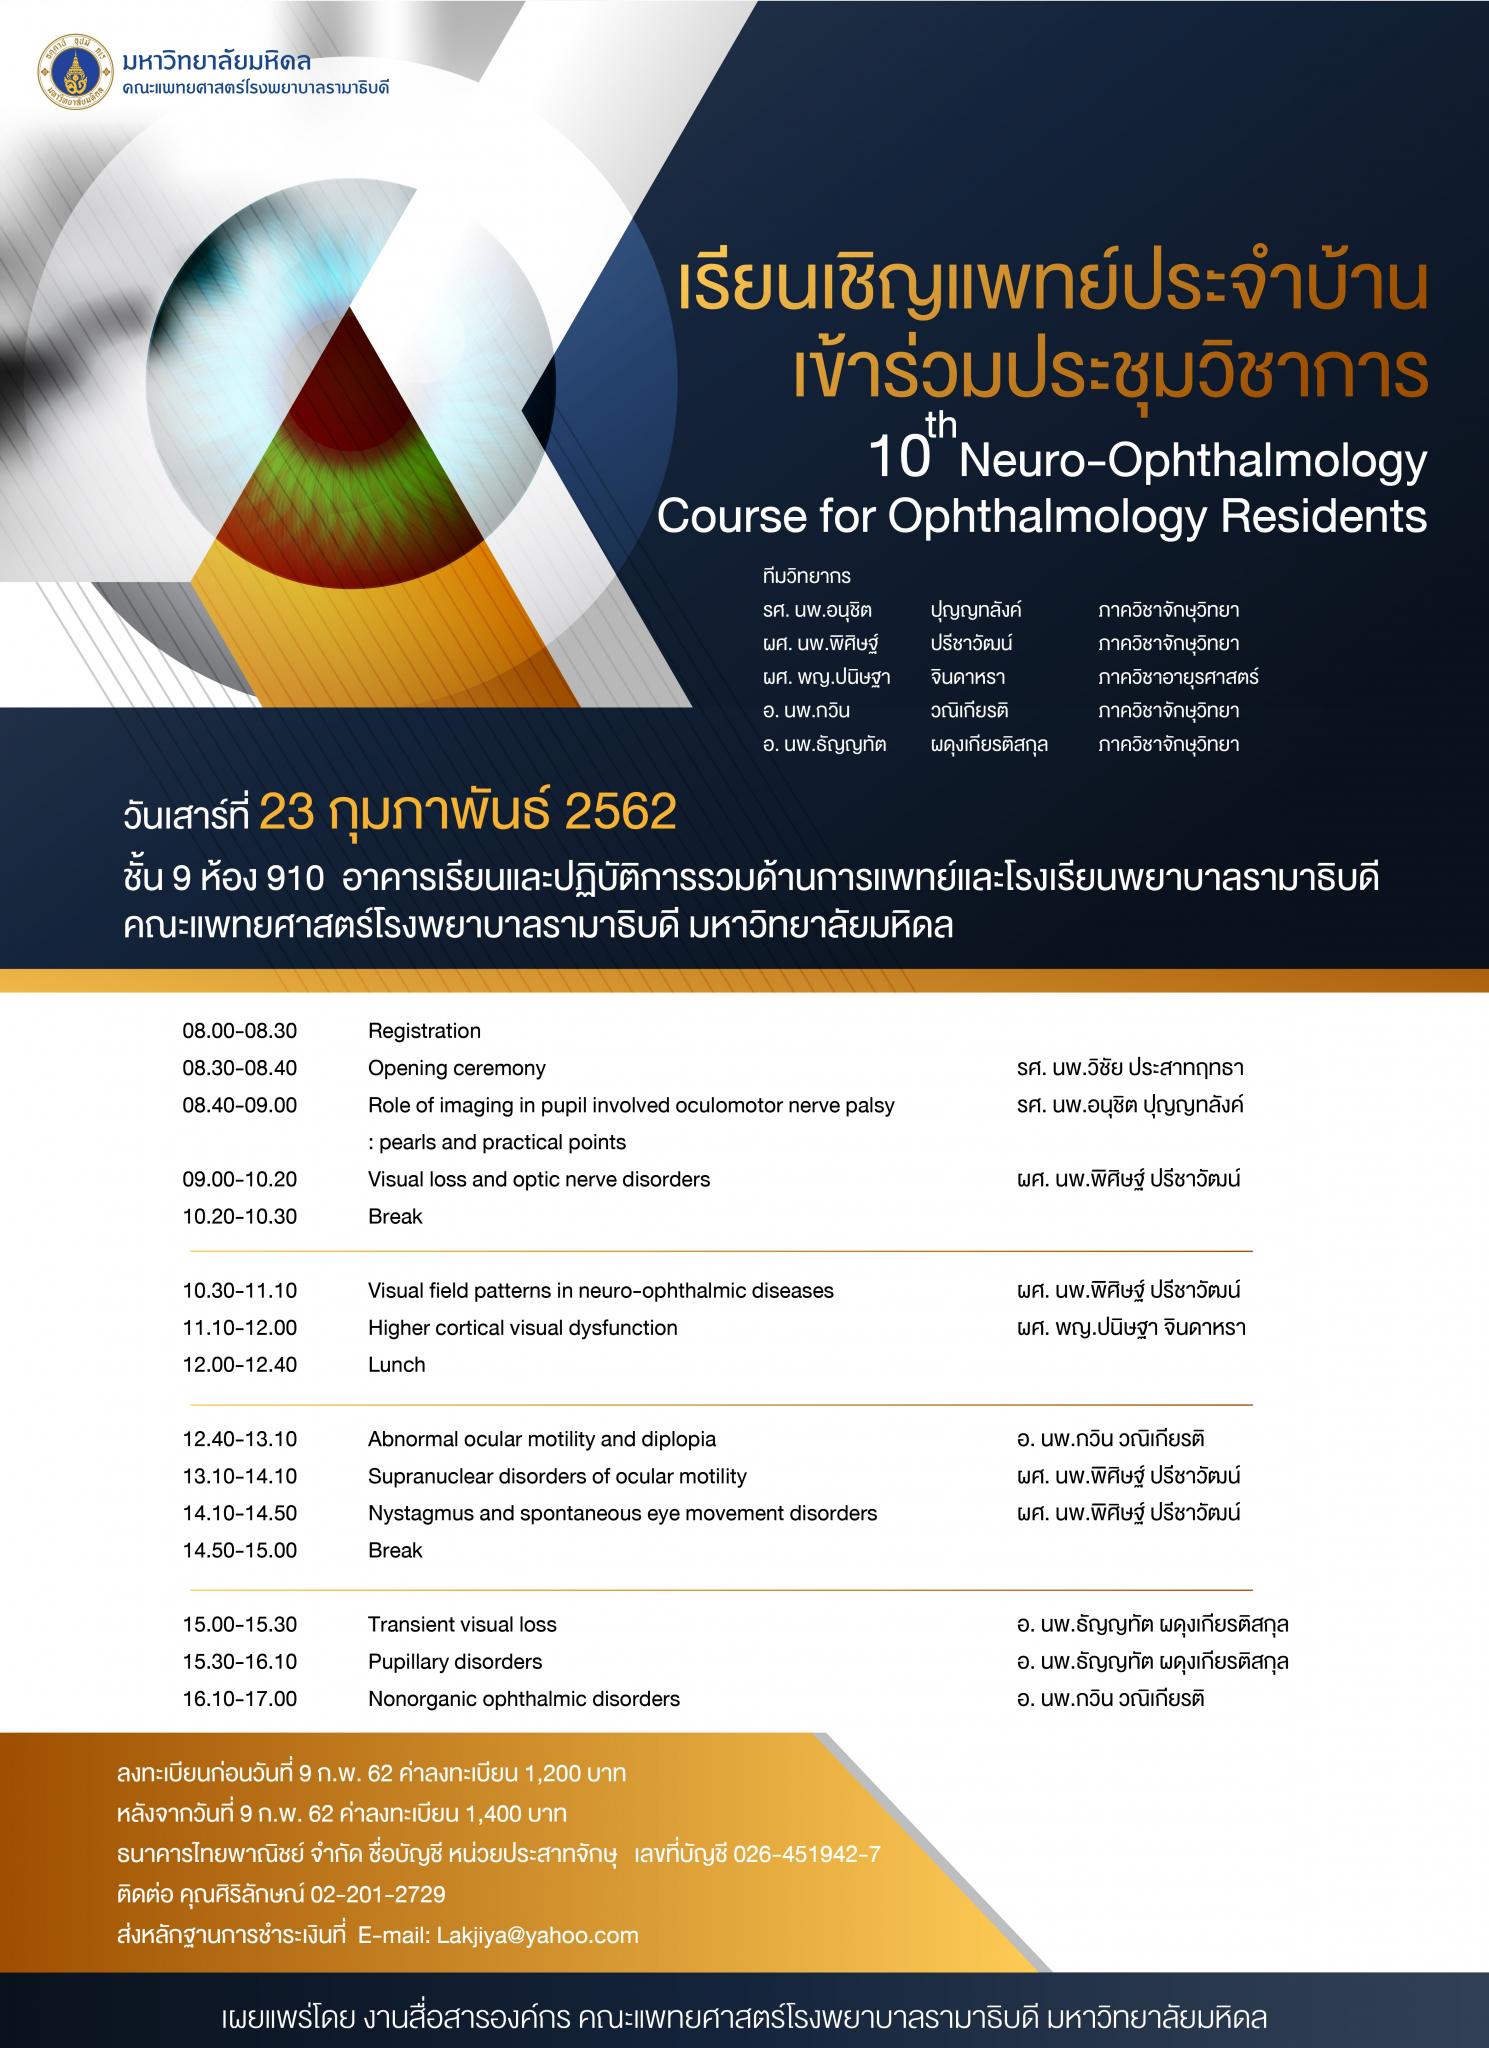 เรียนเชิญแพทย์ประจำบ้าน เข้าร่วมประชุมวิชาการ 10th Neuro-Ophthalmology Course for Ophthalmology Residents